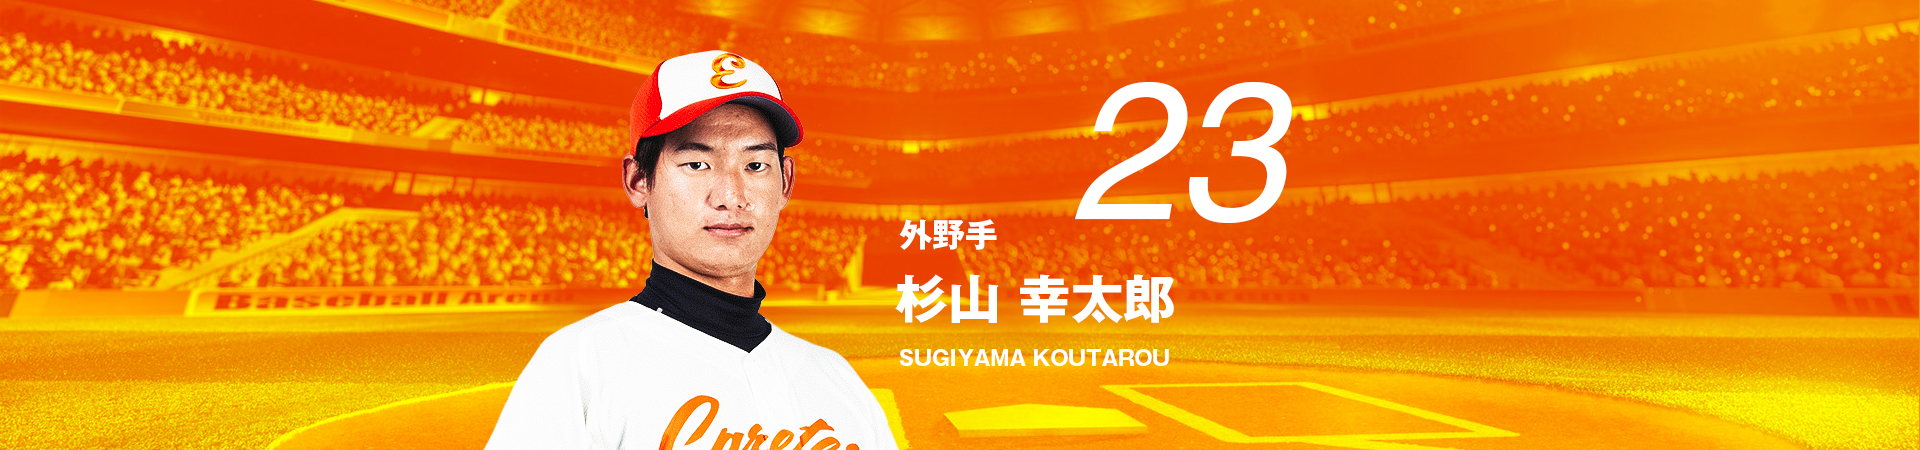 23【外野手】杉山 幸太郎-SUGIYAMA KOUTAROU 